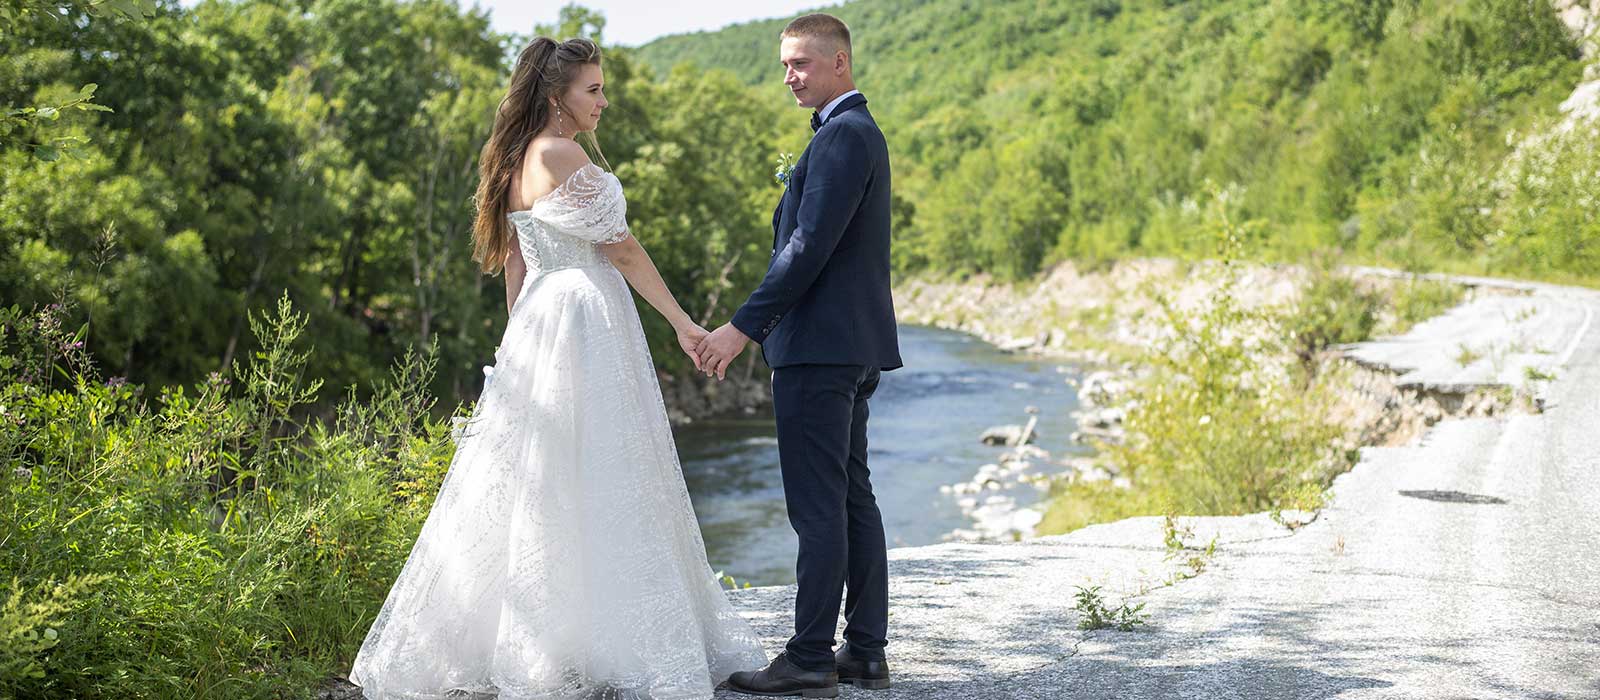 Elopement Wedding – Heiraten in zweisamer Atmosphäre